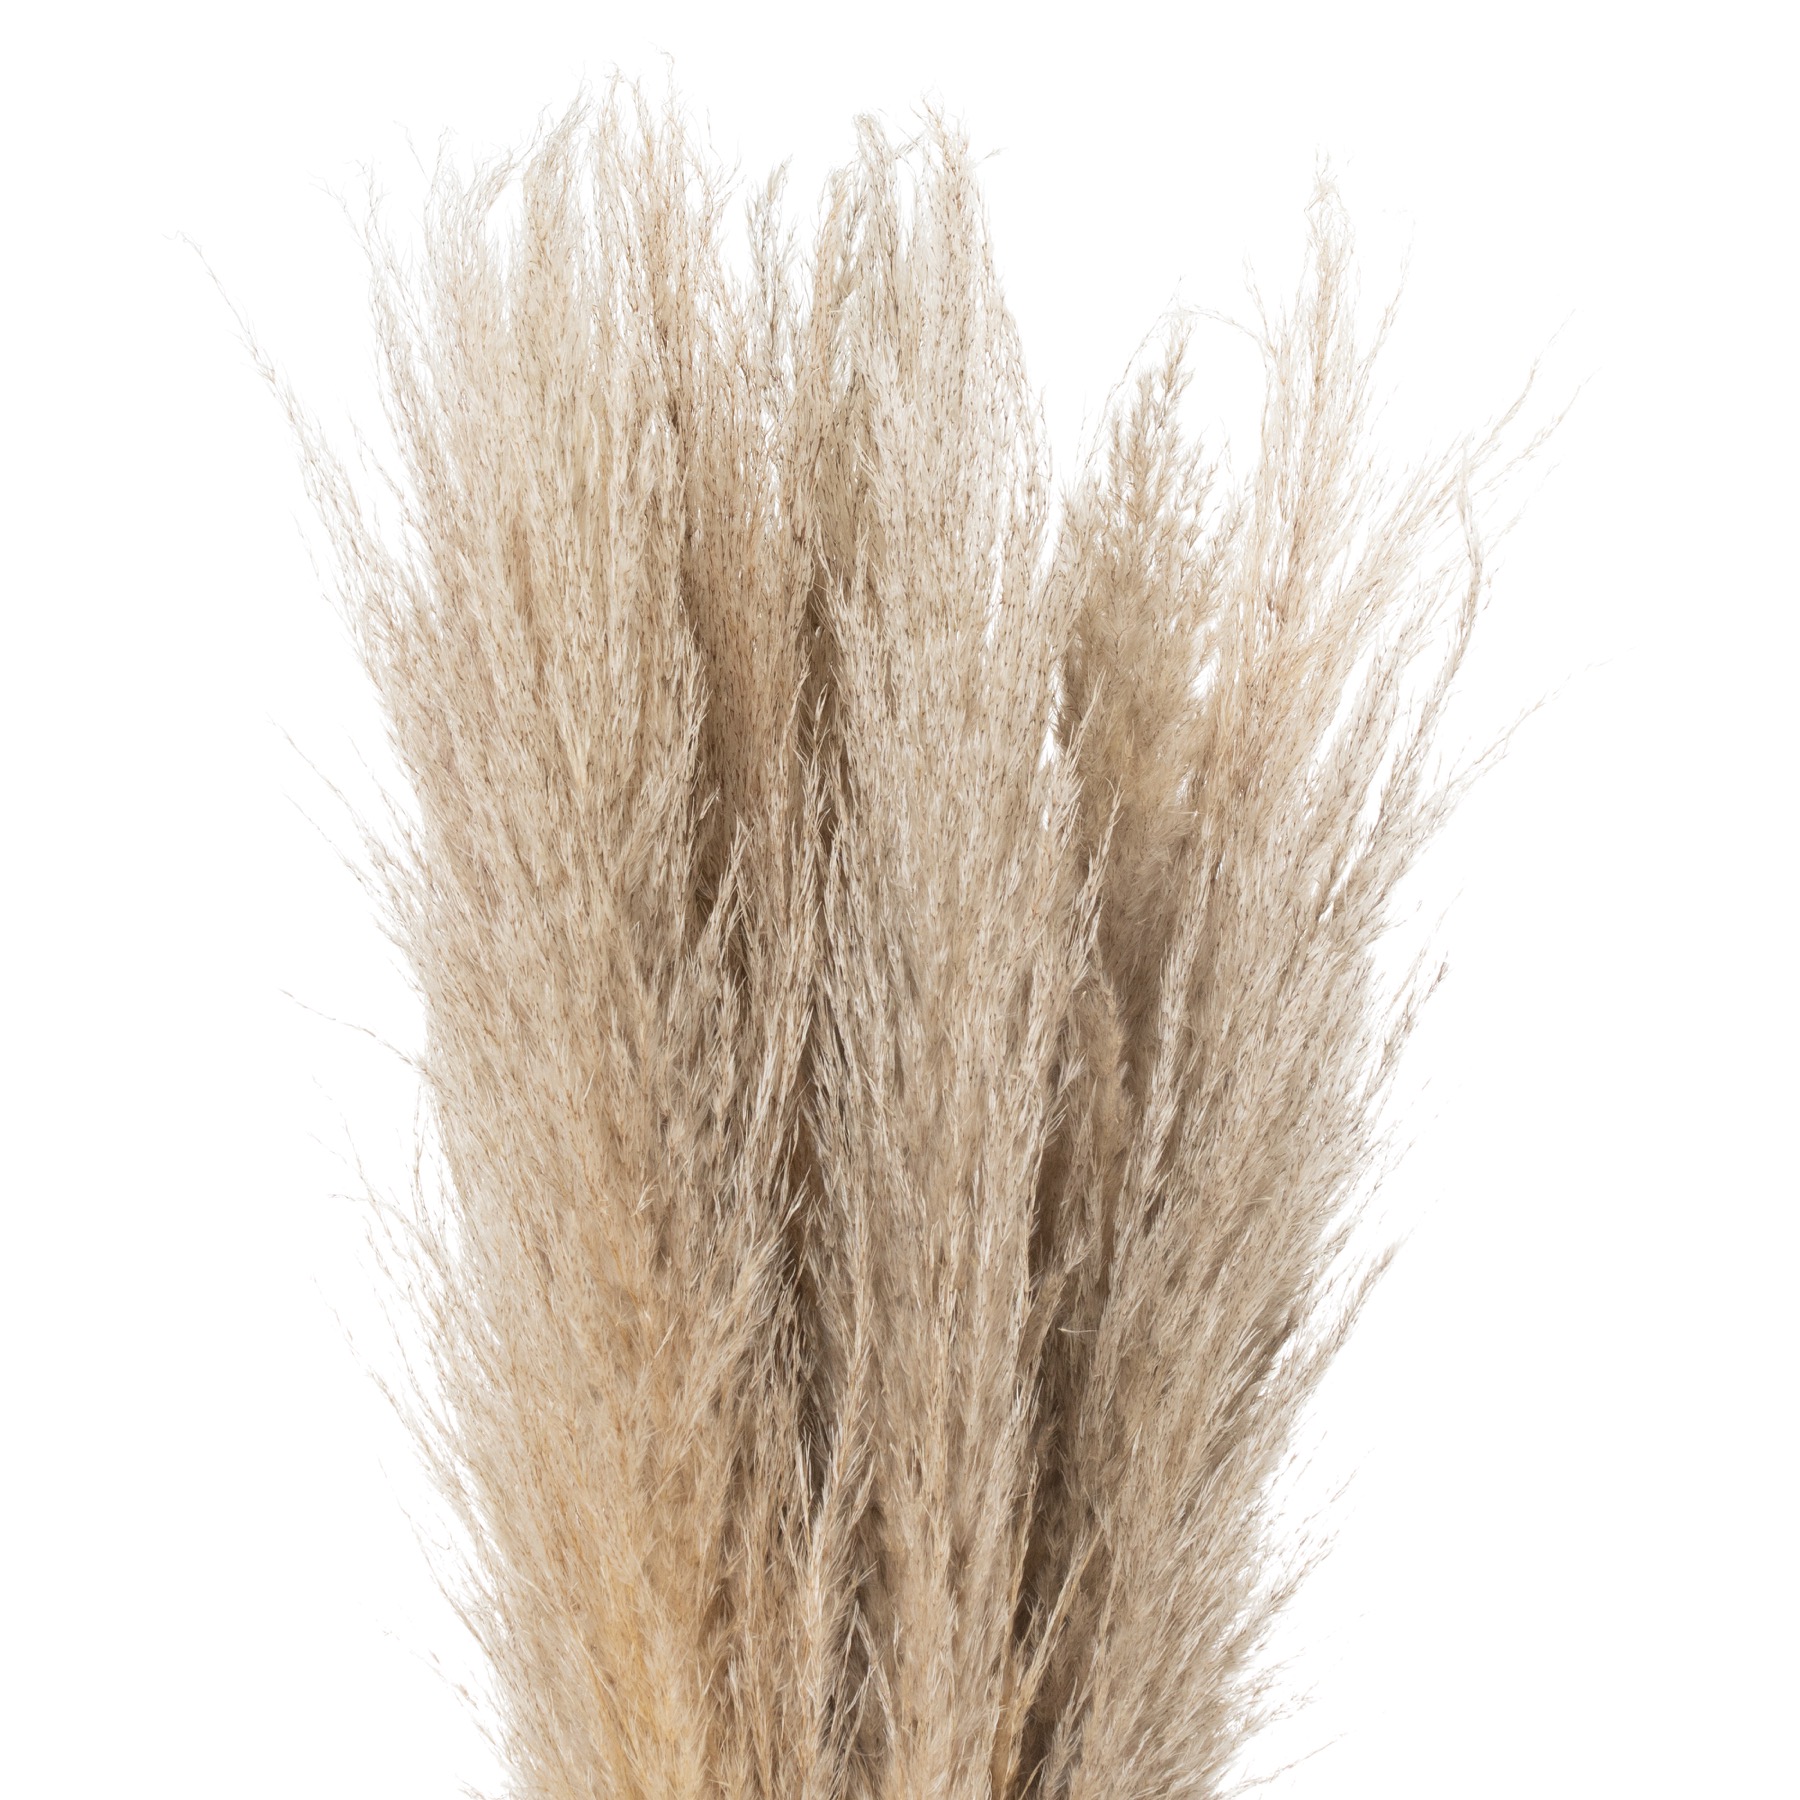 Taupe Grey Pampas Grass Stem - Image 1